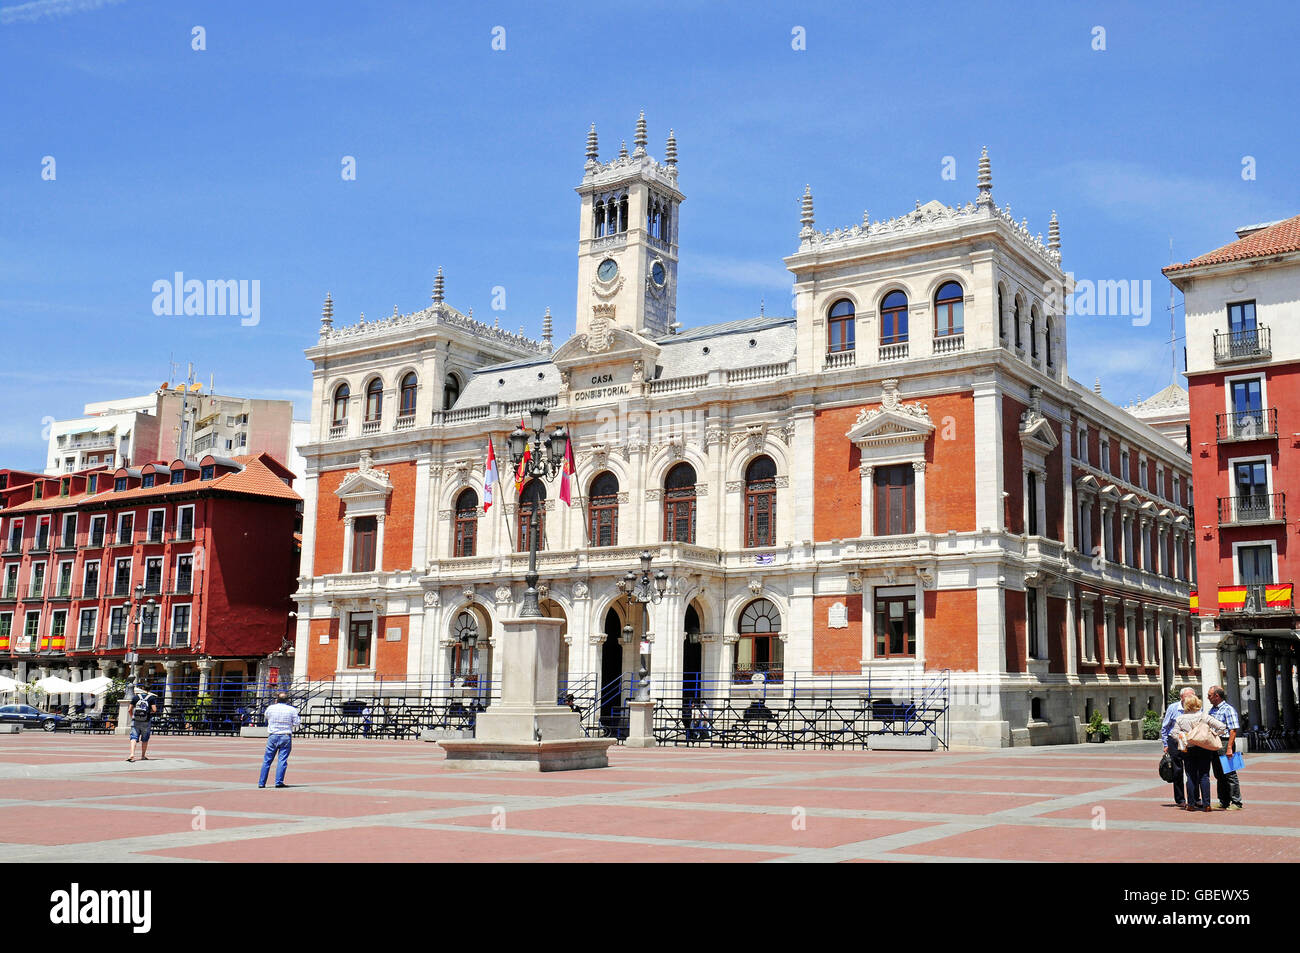 Mairie, Place de l'hôtel de ville, de la Plaza Mayor, Valladolid, Castille et Leon, Espagne / Castilla y Leon Banque D'Images